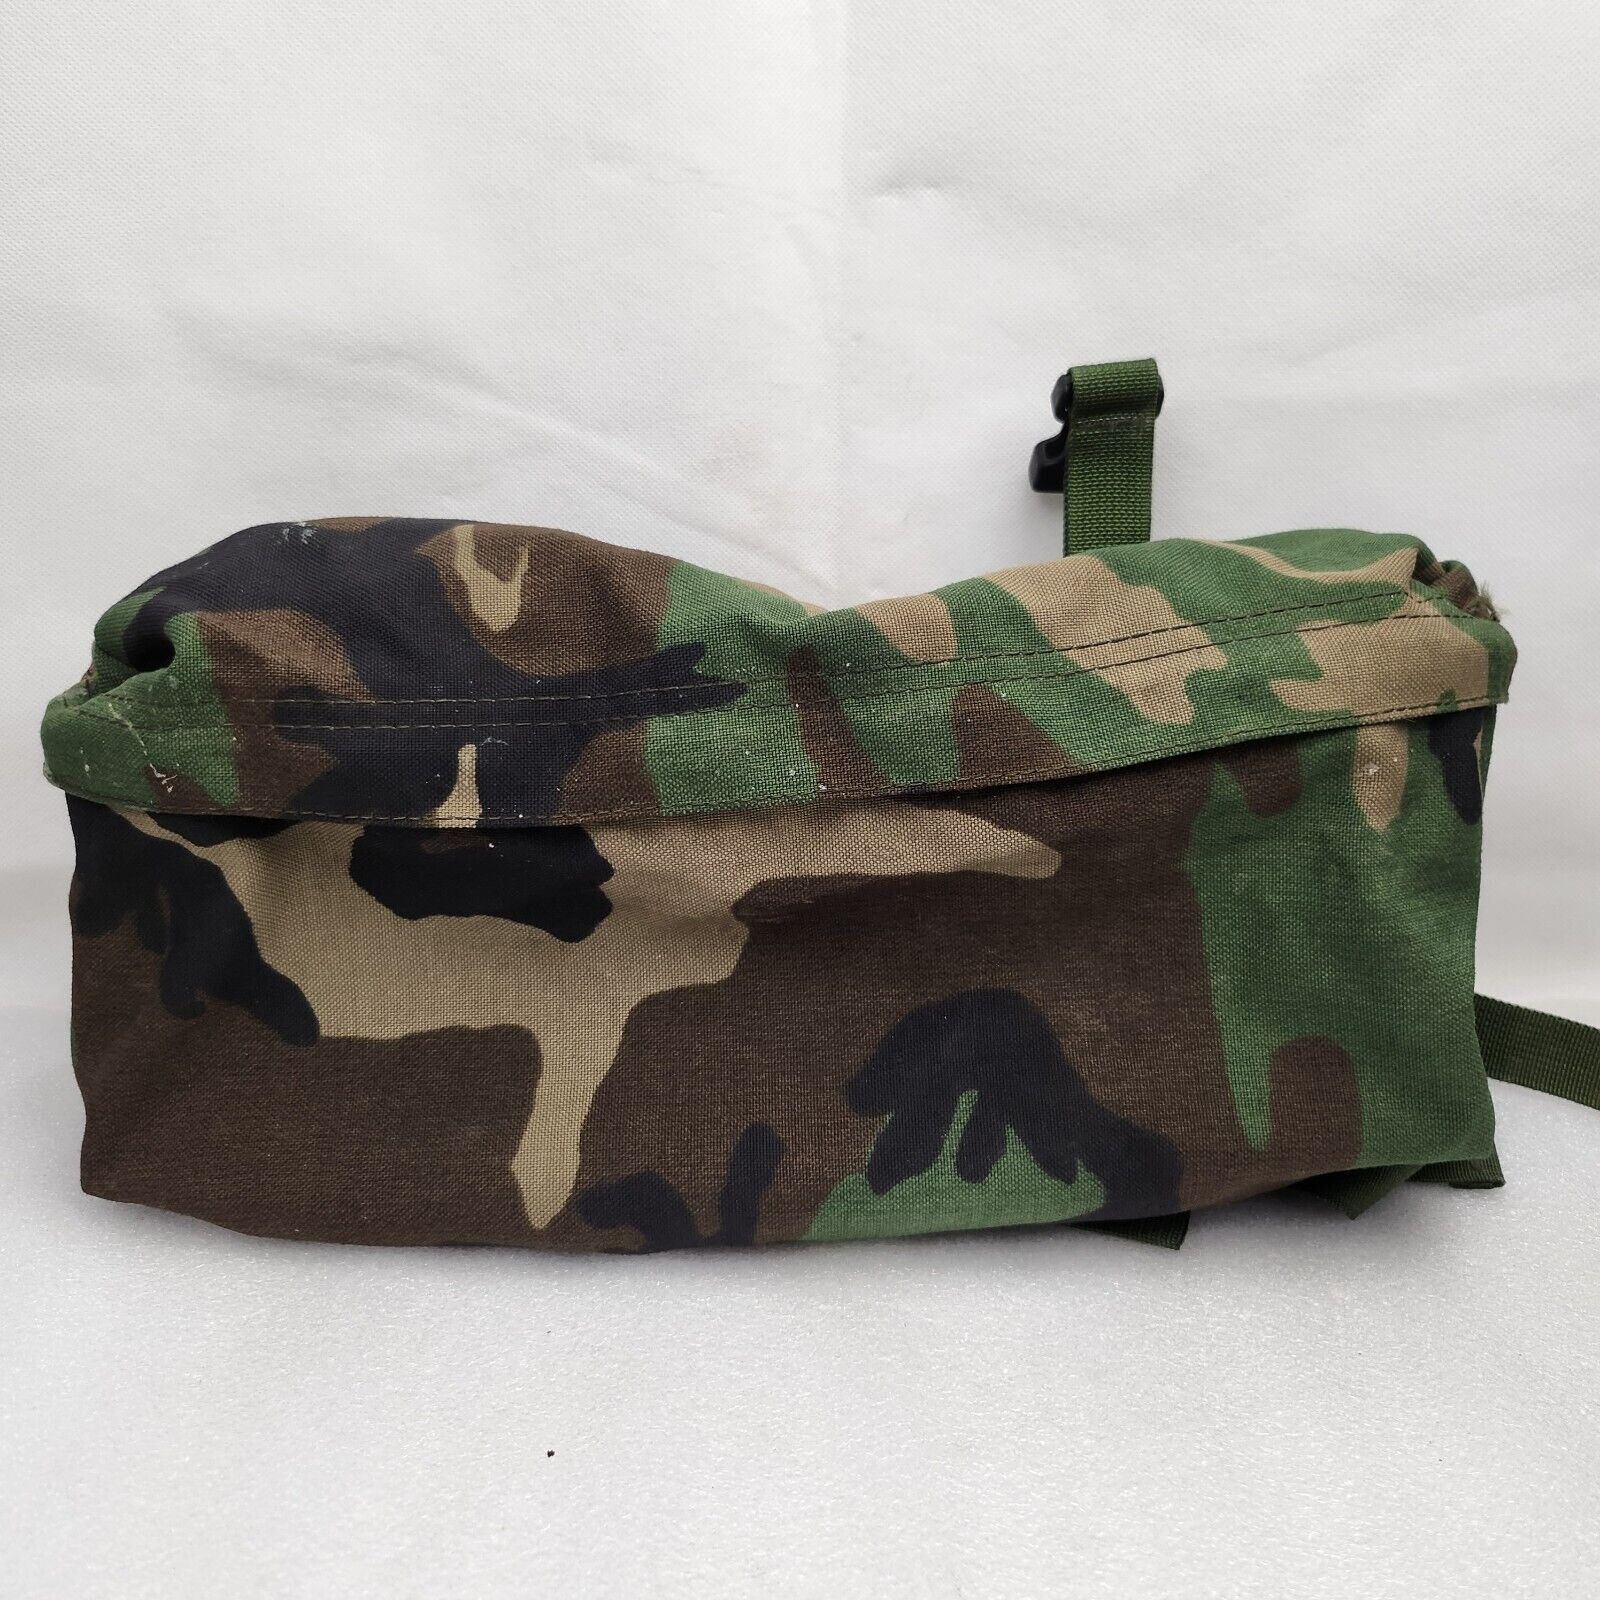 USGI MOLLE II Woodland M81 Camo Waist Pack Used Surplus Army Marines